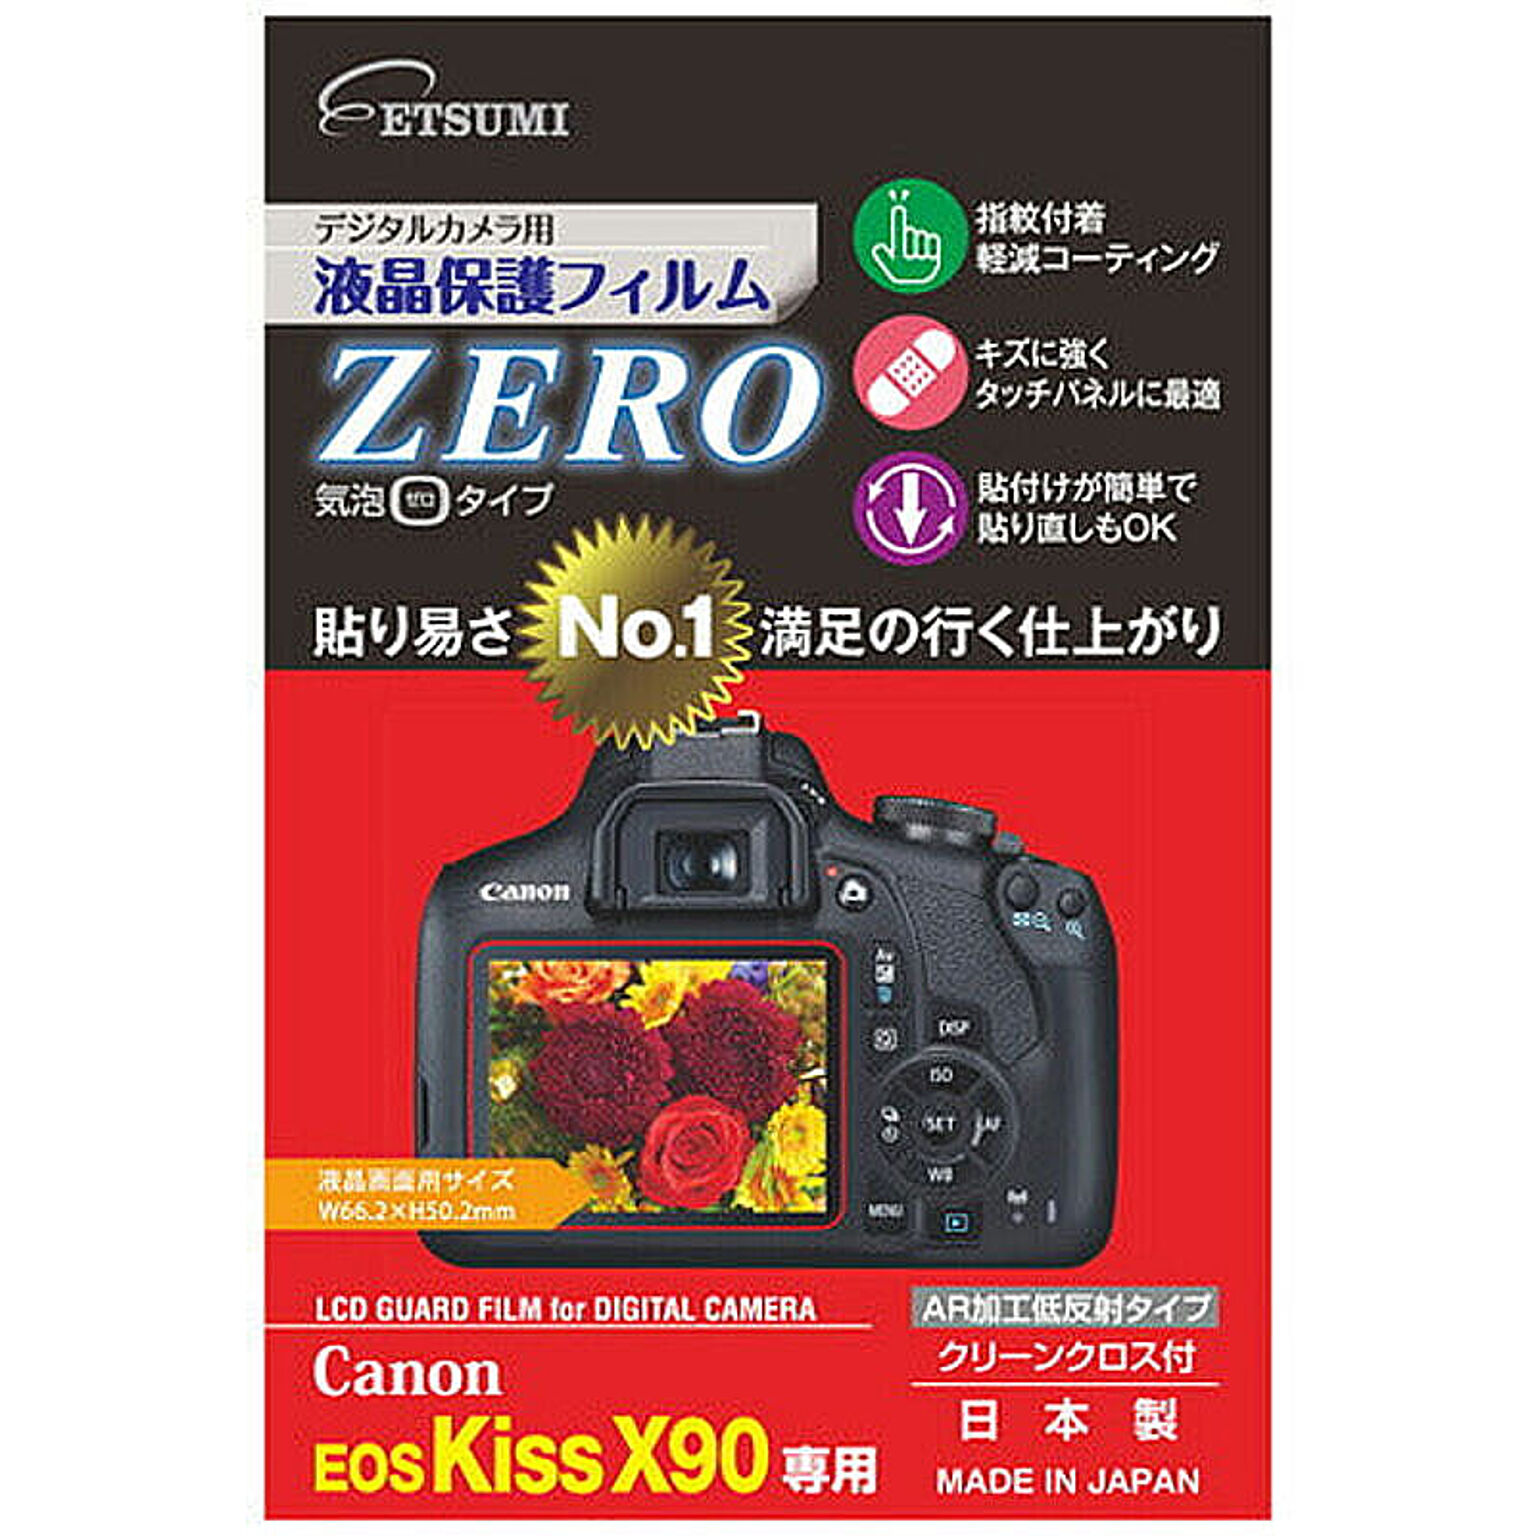 エツミ デジタルカメラ用液晶保護フィルムZERO Canon EOS kiss X90専用 E-7364 管理No. 4975981736490  通販 RoomClipショッピング